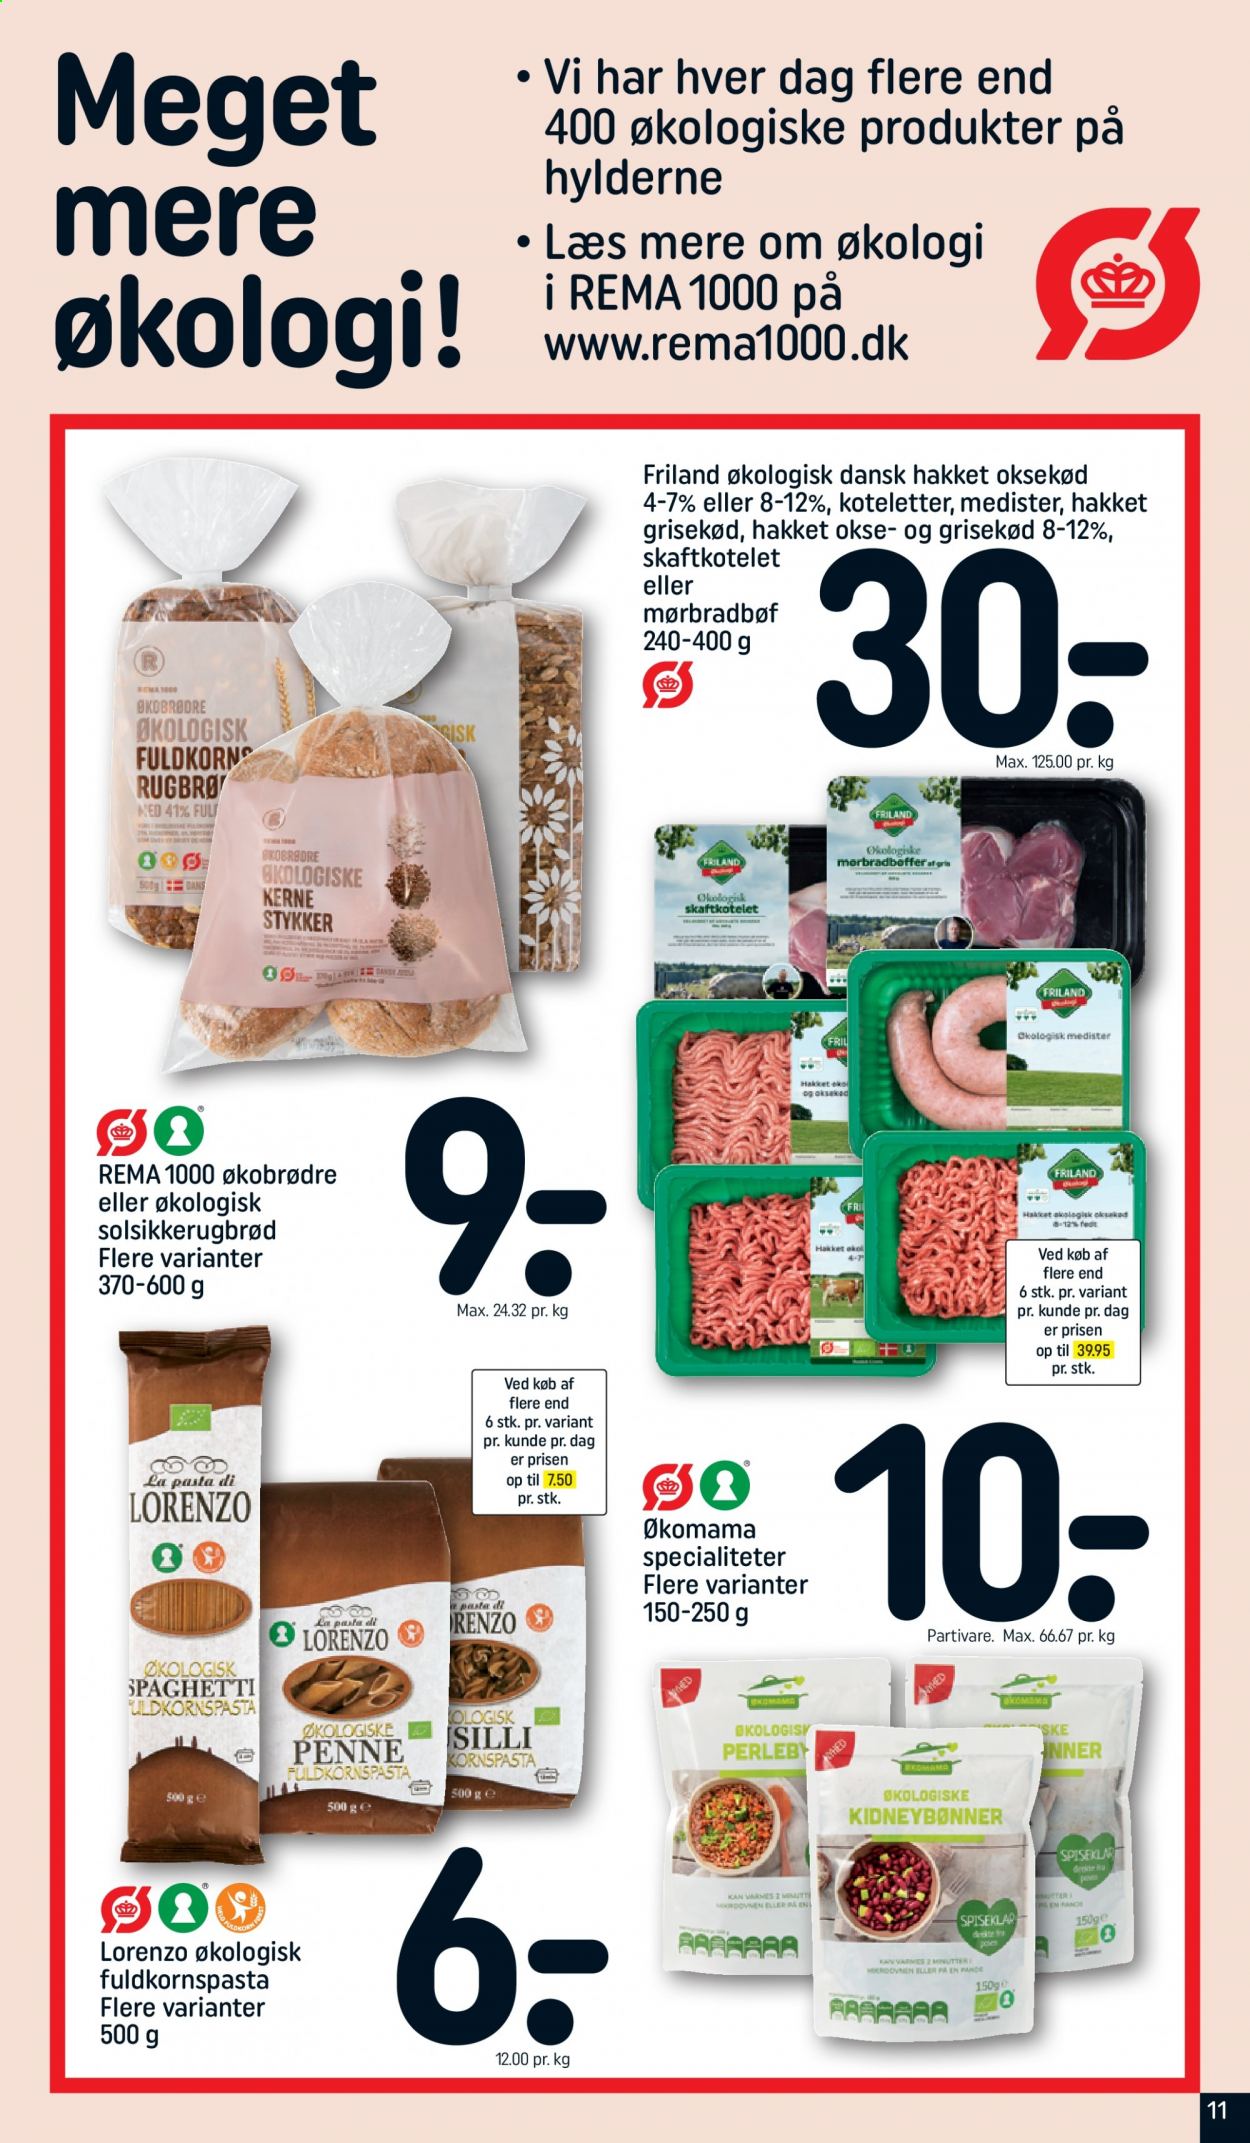 thumbnail - Rema 1000 tilbud  - 7.3.2021 - 13.3.2021 - tilbudsprodukter - hakket oksekød, hakket grisekød, medister, kidneybønner, pasta, spaghetti. Side 11.